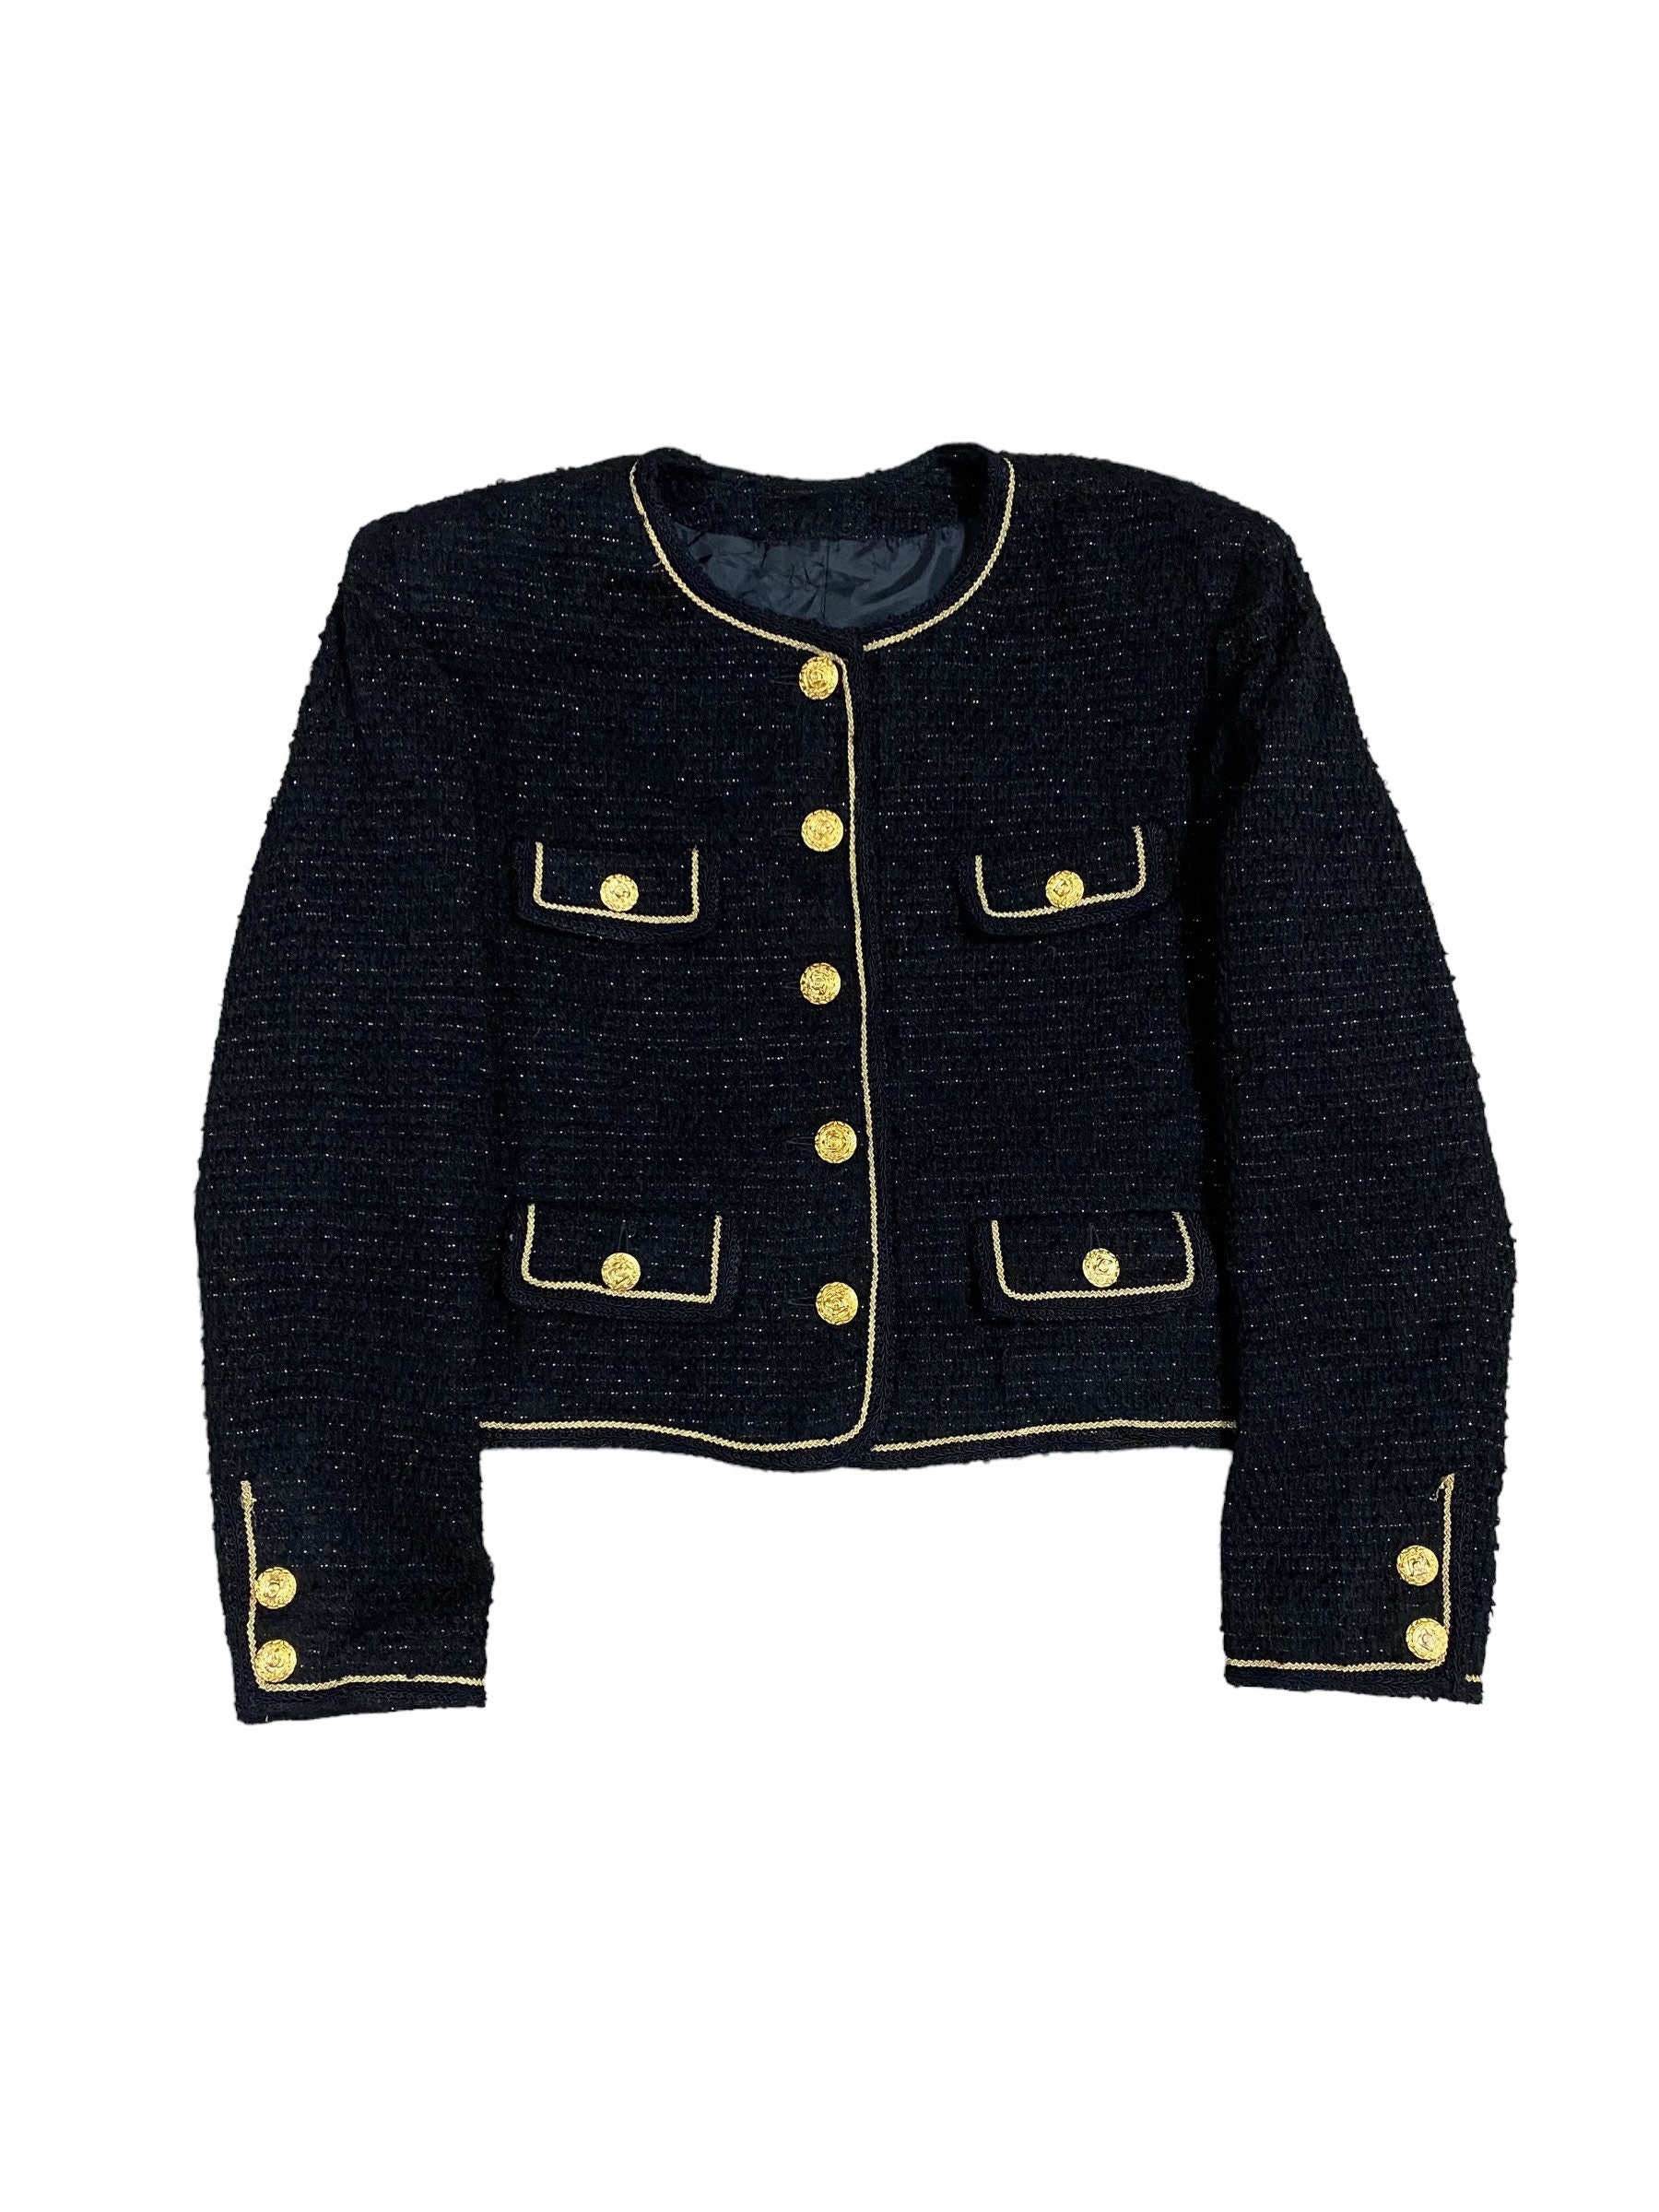 Black Tweed Jacket + Short + Chanel CF  Black tweed jacket, Fashion, Black  tweed